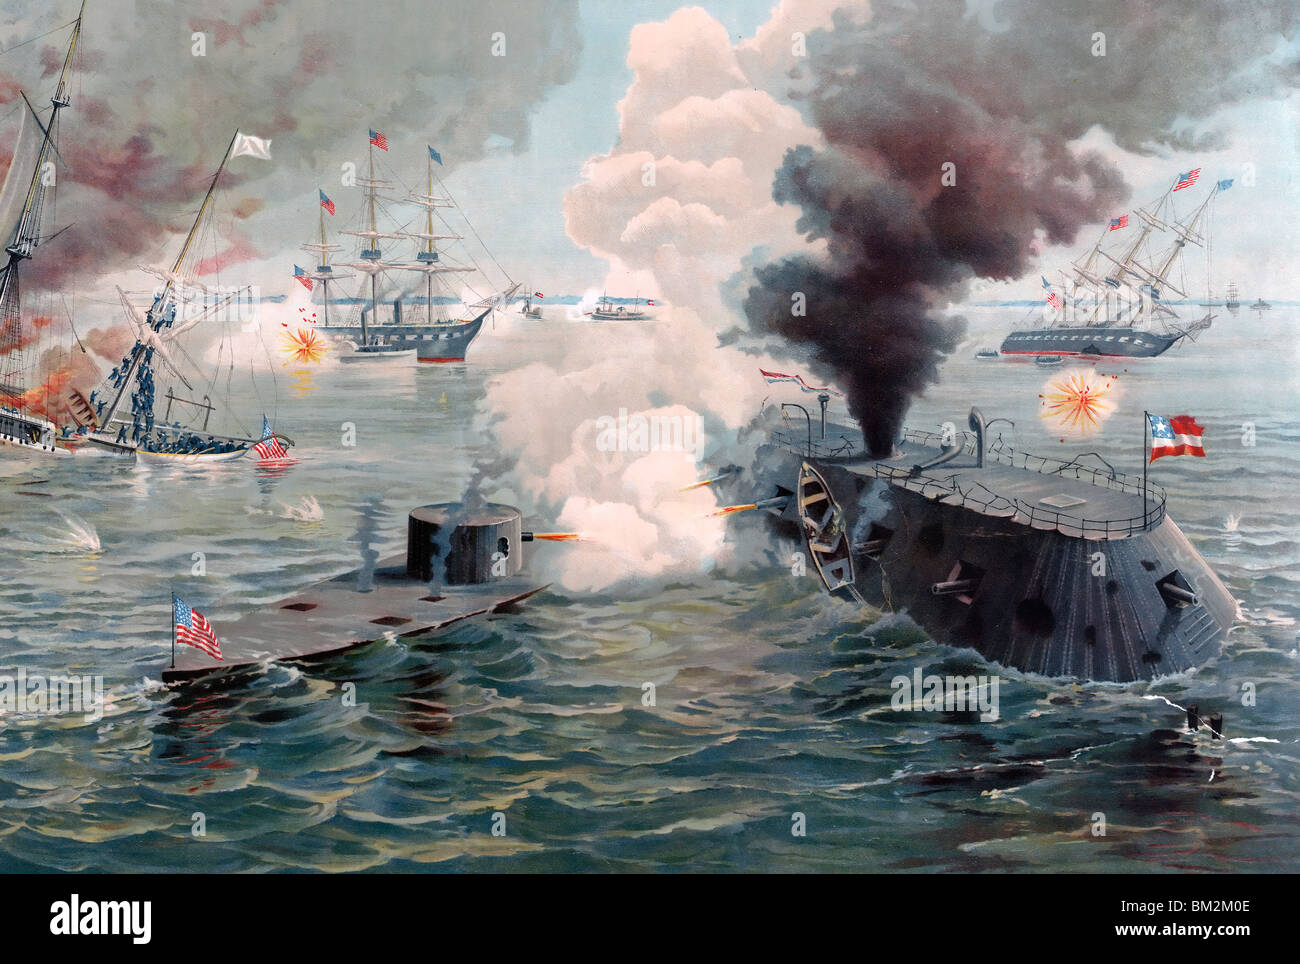 Die erste Begegnung der Panzerschiffe. Tolles Engagement zwischen dem Monitor und Merrimac... 9. März 1862 USA Bürgerkrieg Stockfoto